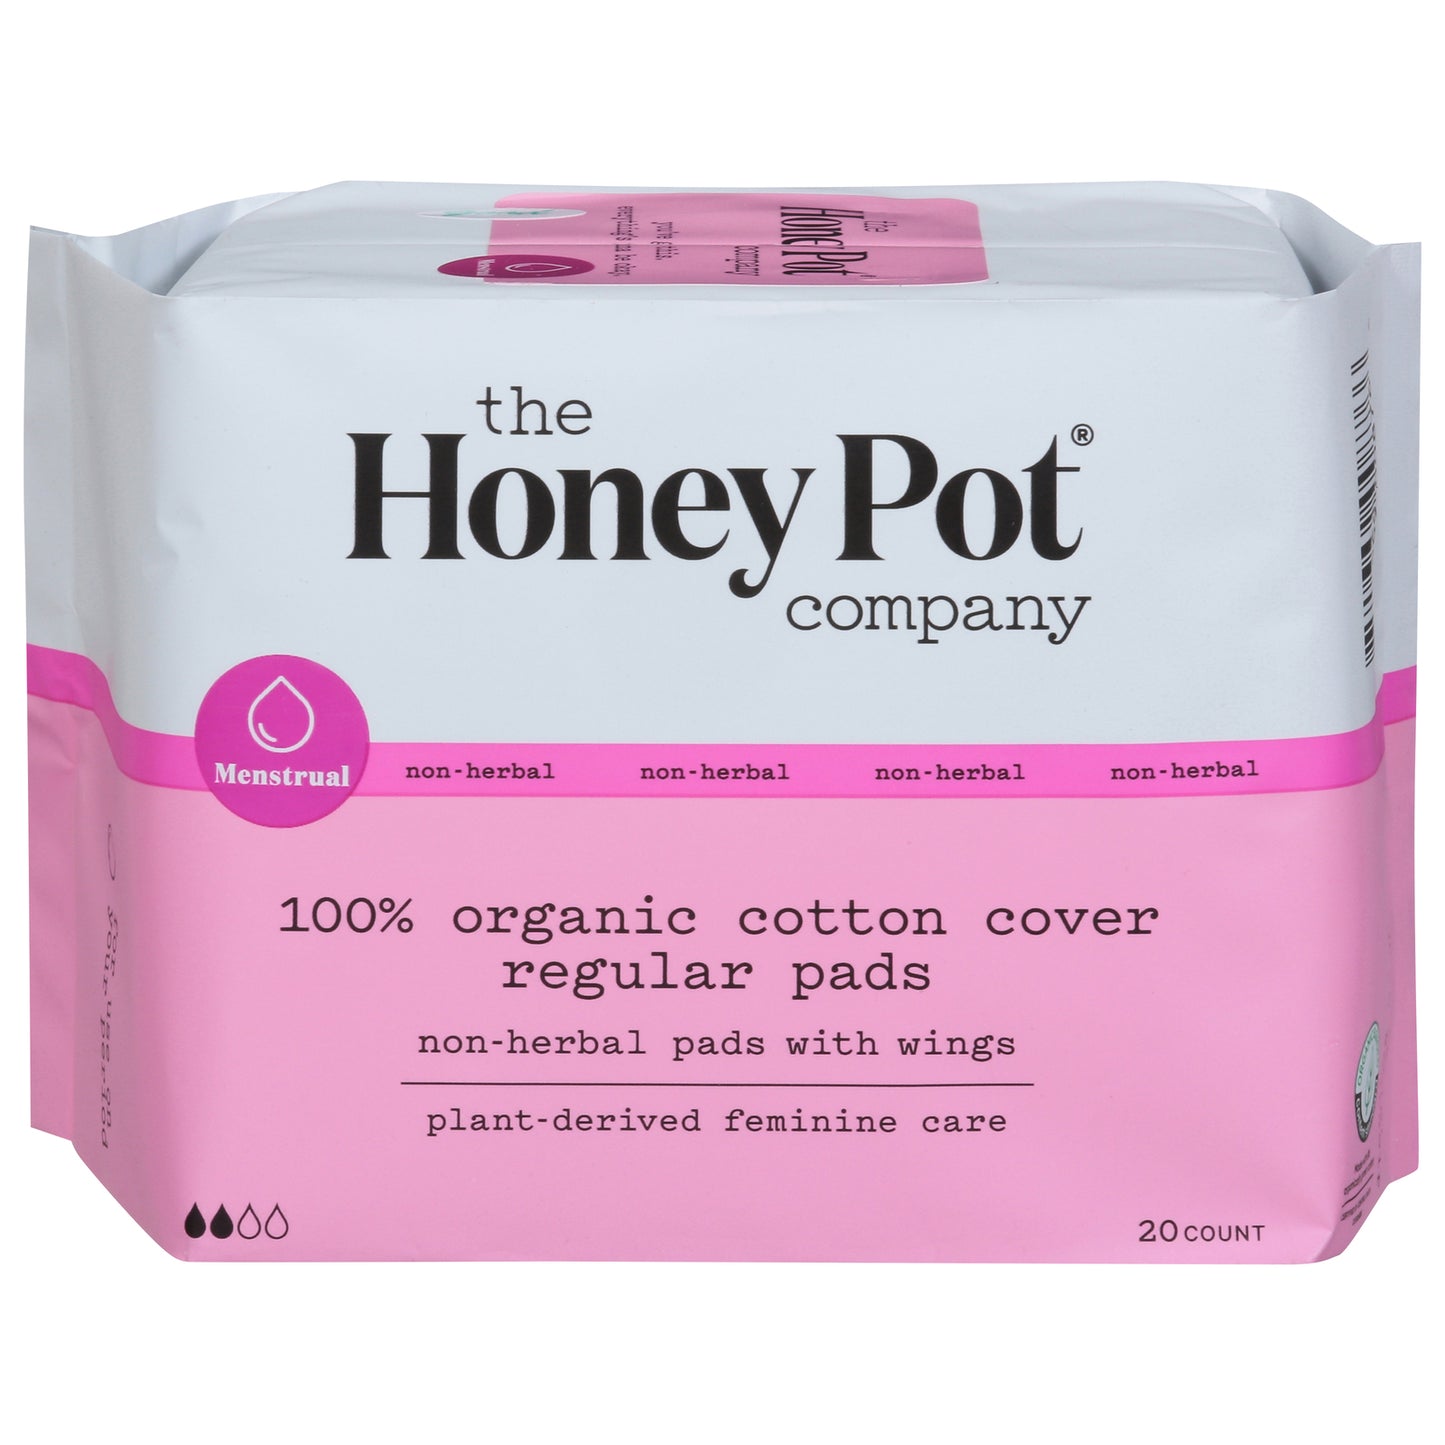 The Honey Pot - Pads Menstrual Regular Nonherbal, 20 Ct